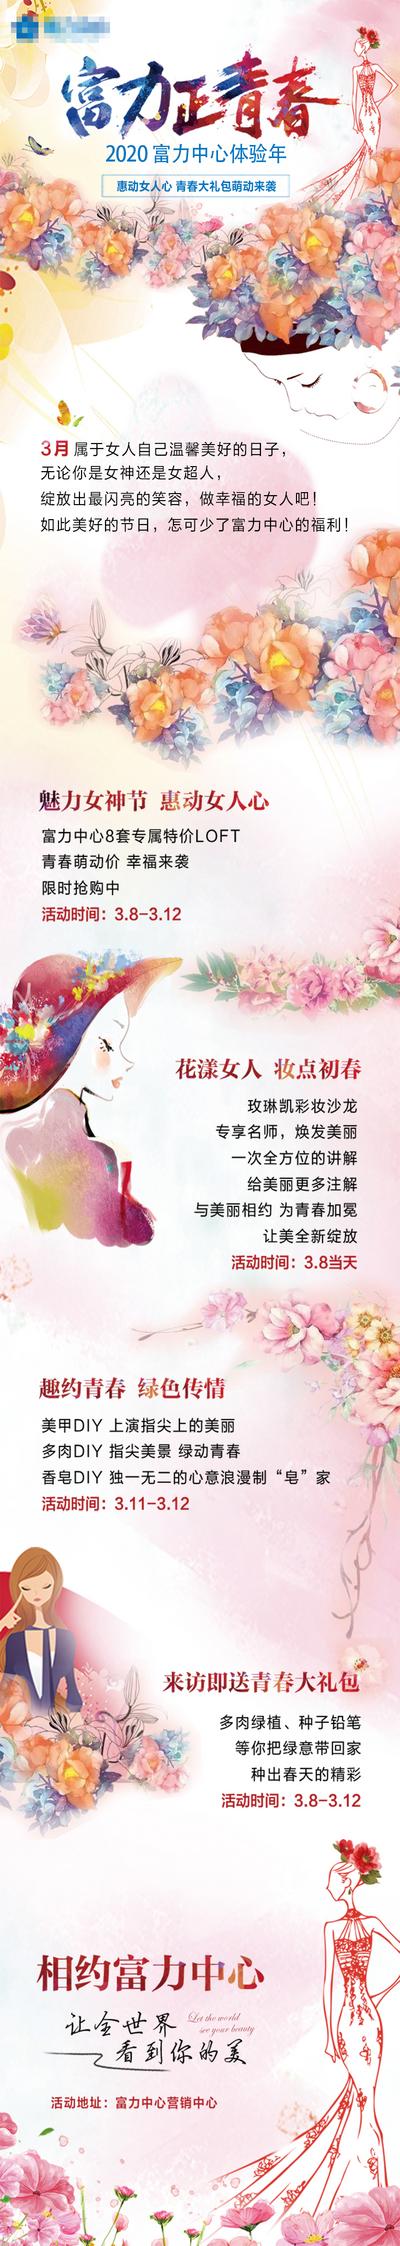 南门网 专题设计 长图 地产 公历节日 妇女节 活动 插画